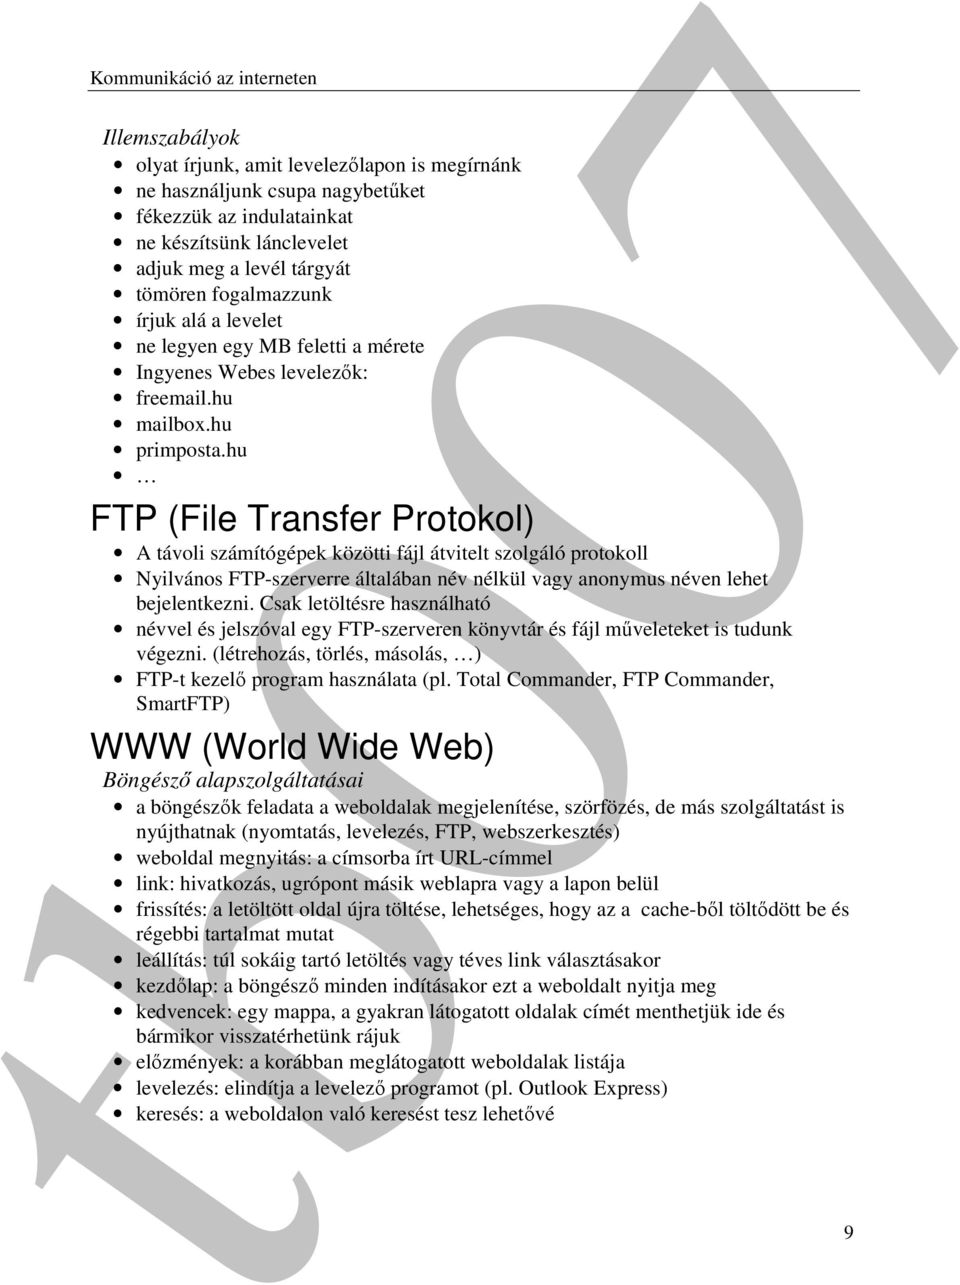 hu FTP (File Transfer Protokol) A távoli számítógépek közötti fájl átvitelt szolgáló protokoll Nyilvános FTP-szerverre általában név nélkül vagy anonymus néven lehet bejelentkezni.